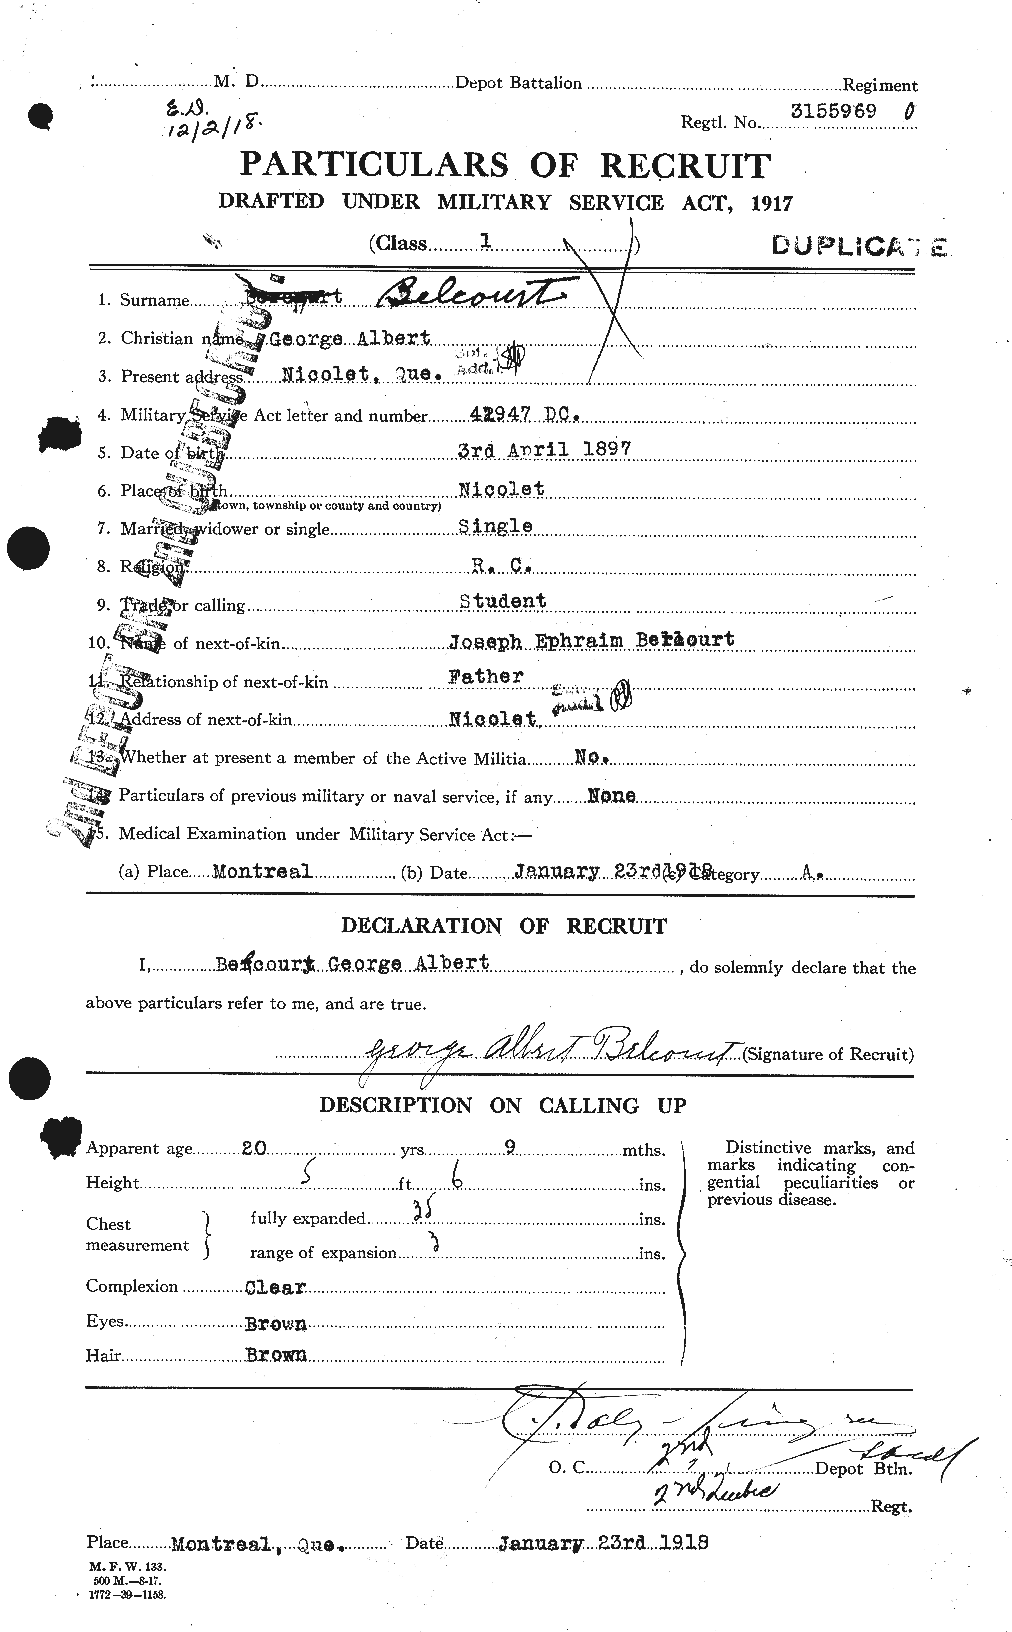 Dossiers du Personnel de la Première Guerre mondiale - CEC 232529a